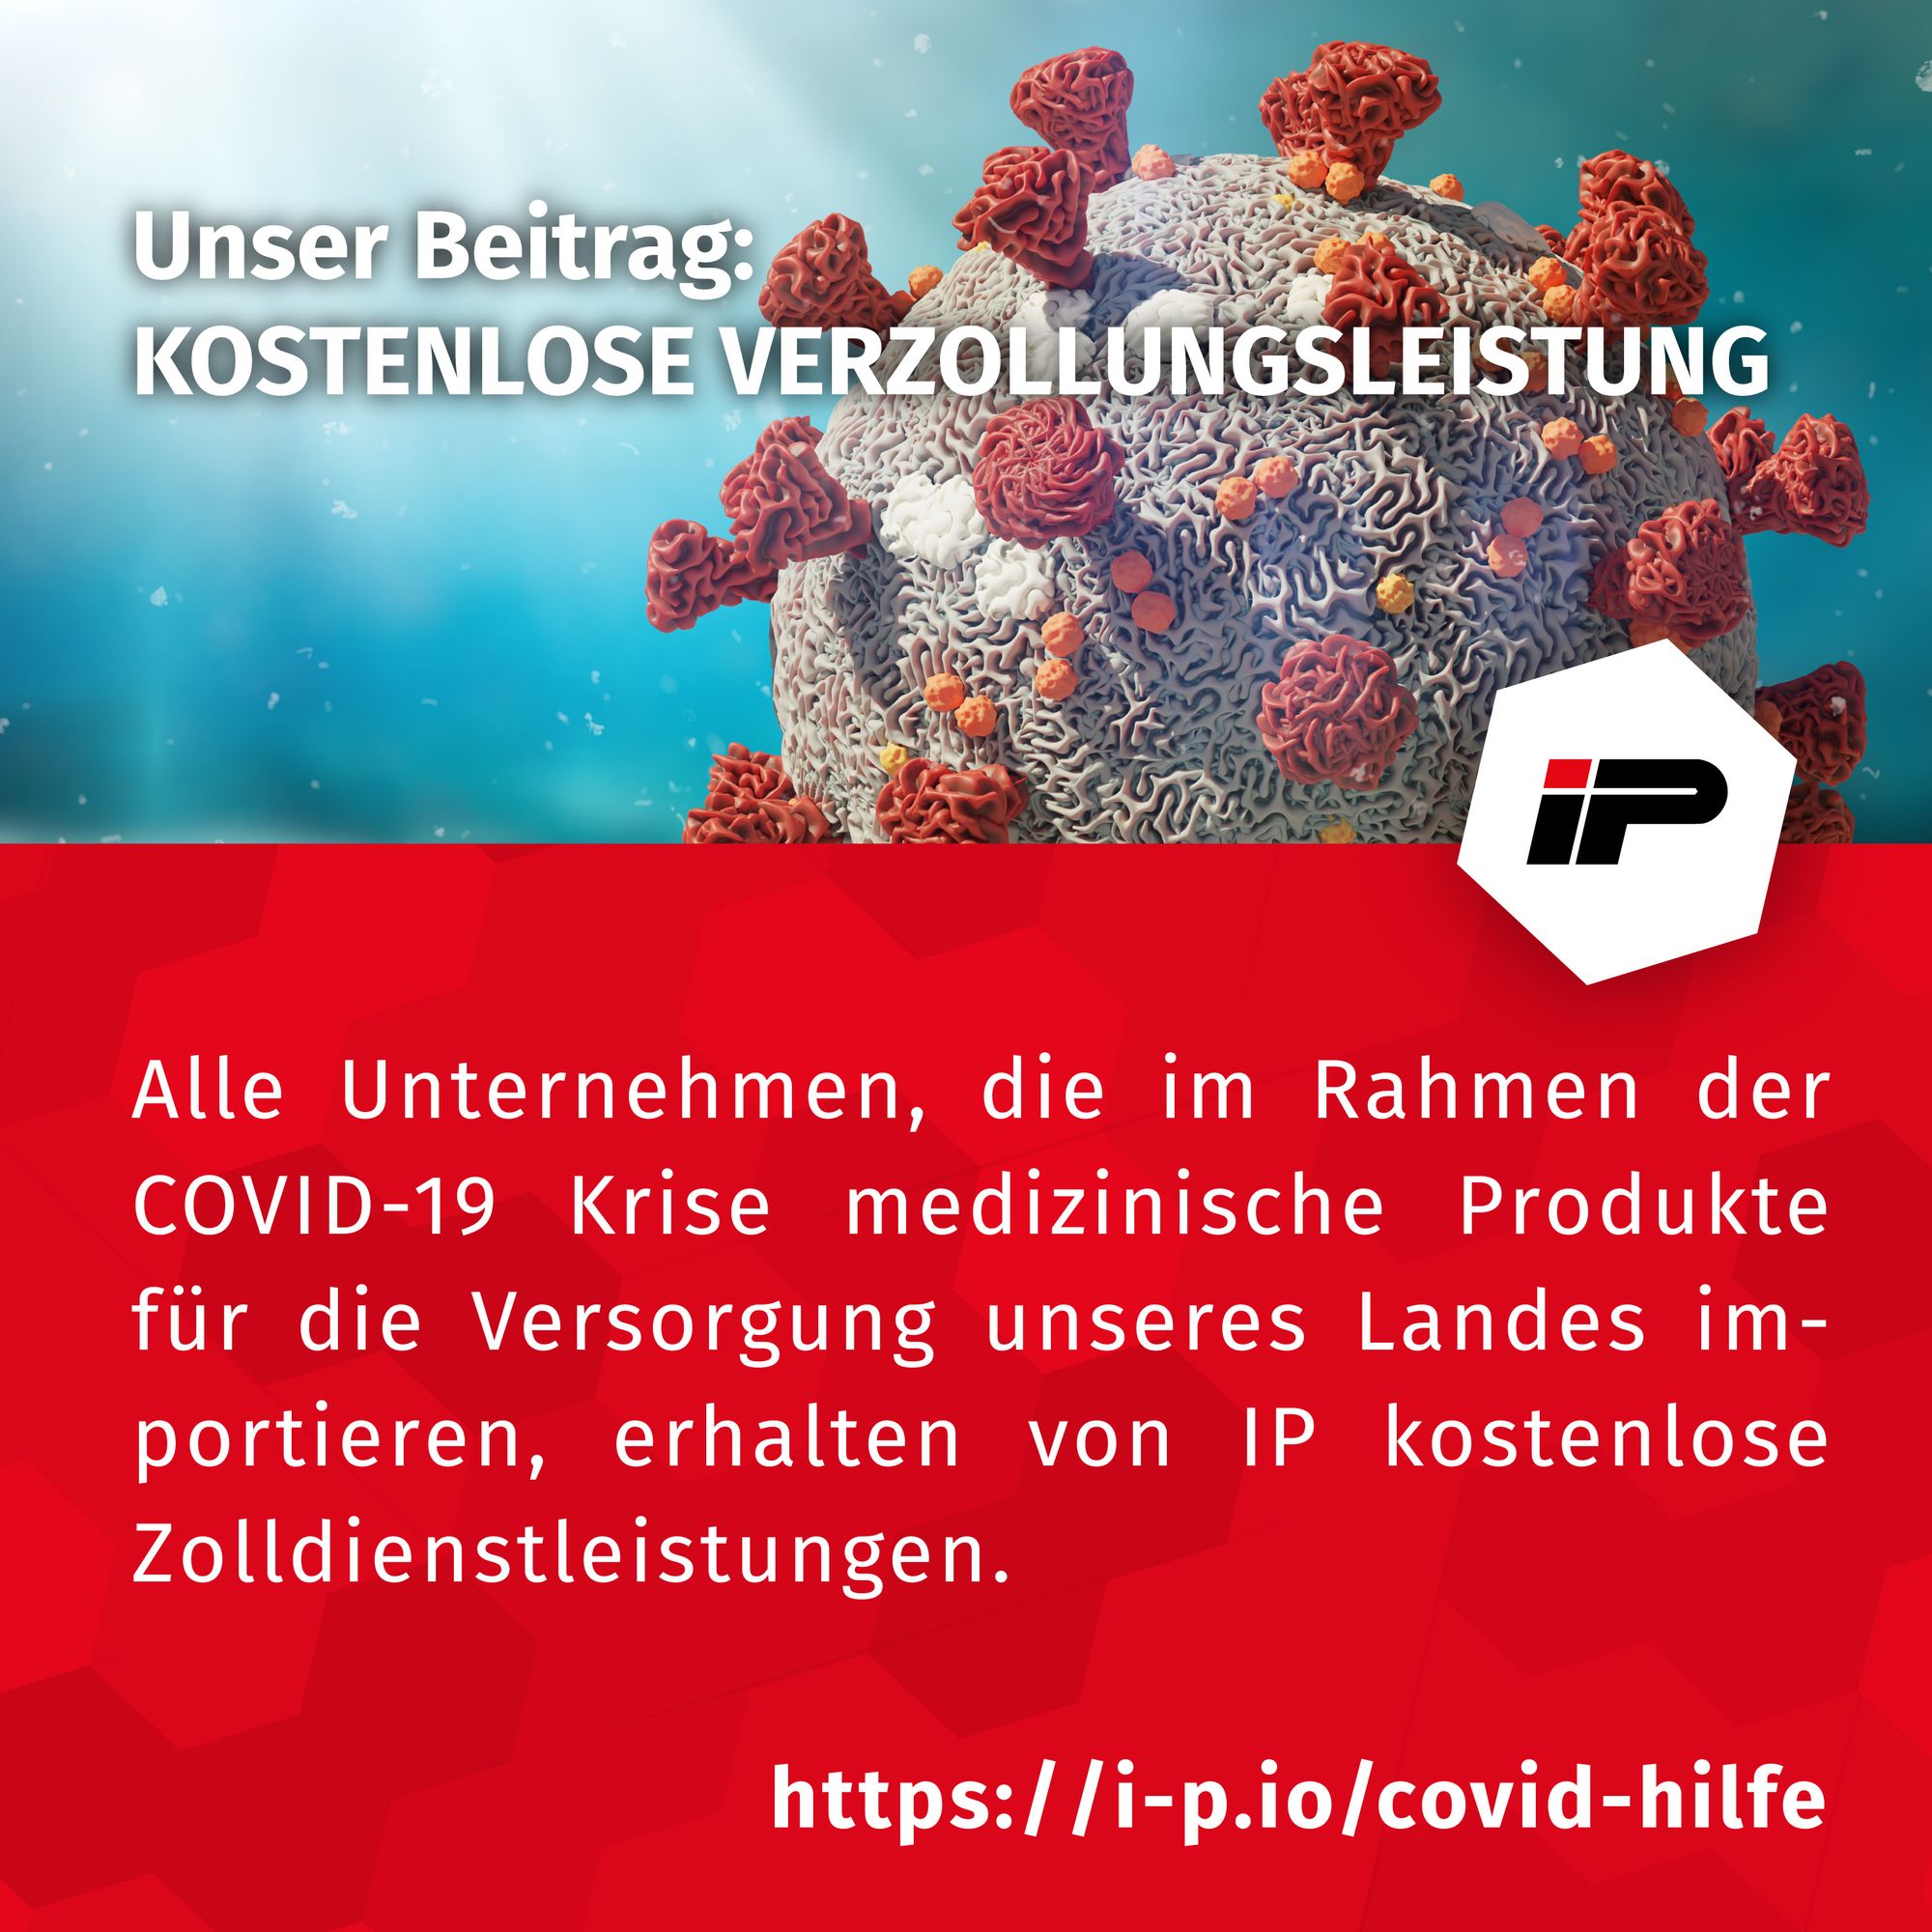 COVID-19 - kostenlose Zolldienstleistung für medizinische Produkte